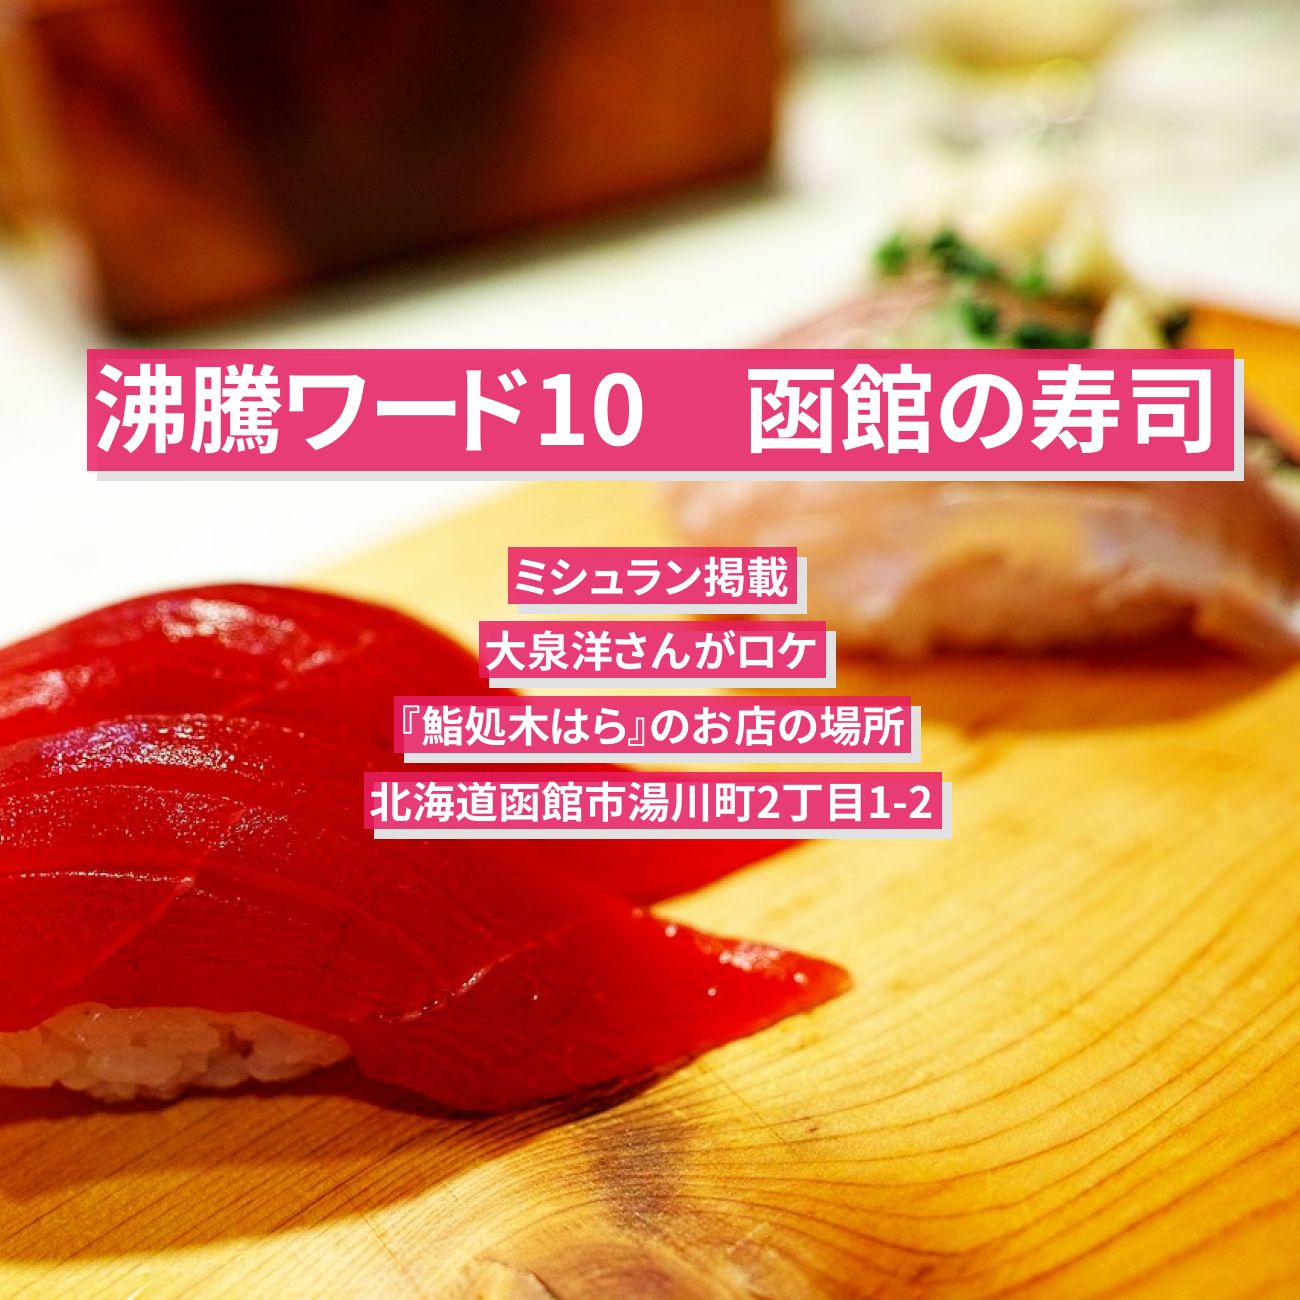 【沸騰ワード10】函館の寿司(ミシュラン) 大泉洋『鮨処木はら』のお店の場所